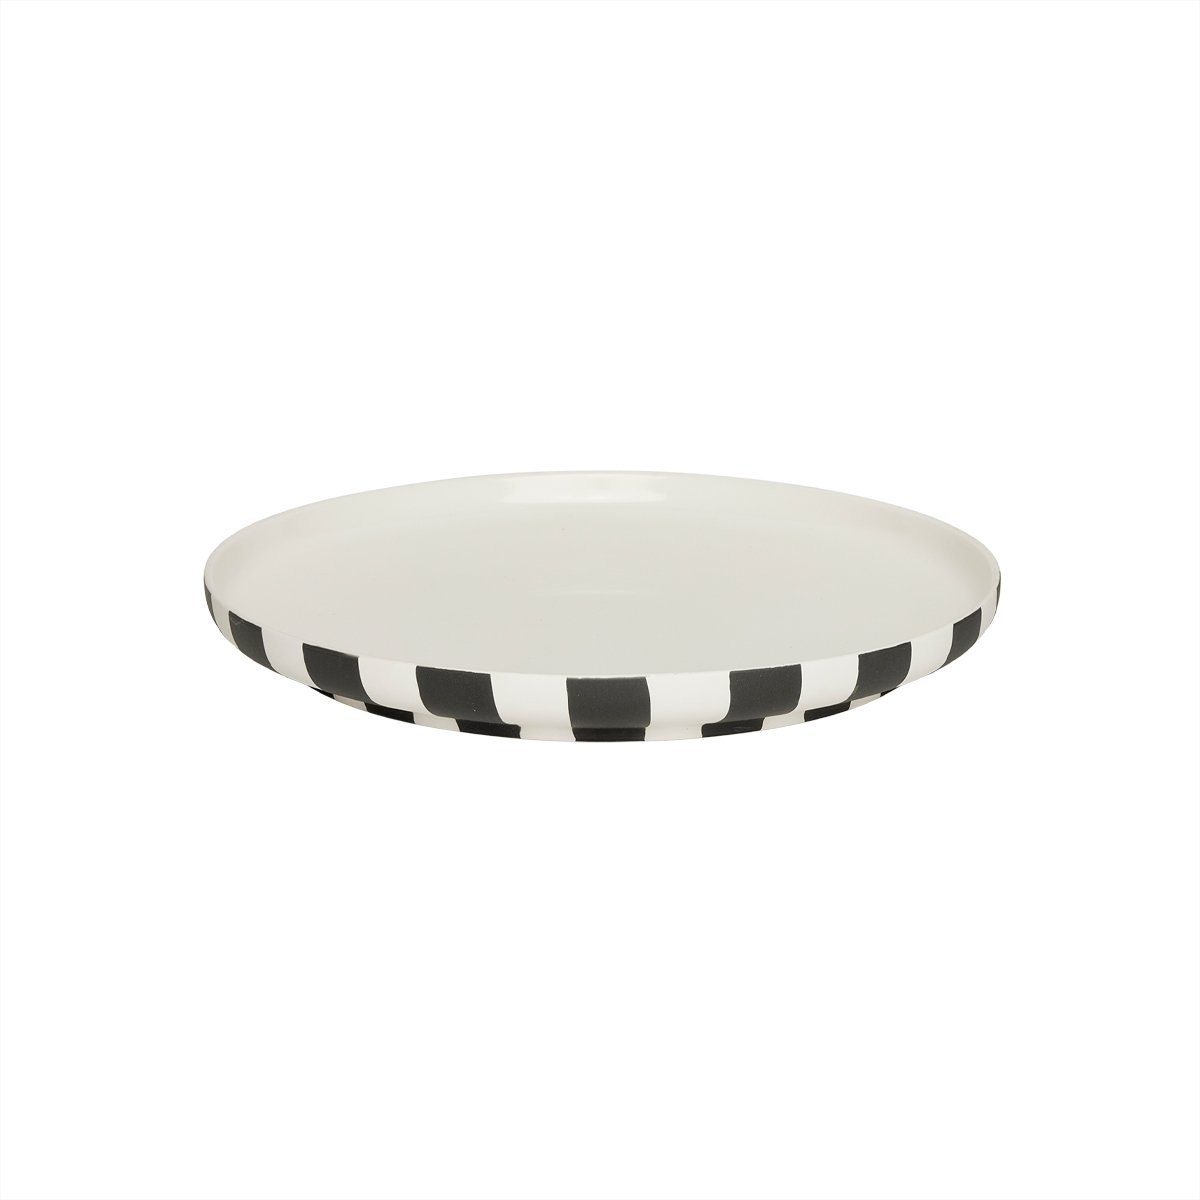 OYOY LIVING - Toppu Dinner Plate - Black/White (L301196)